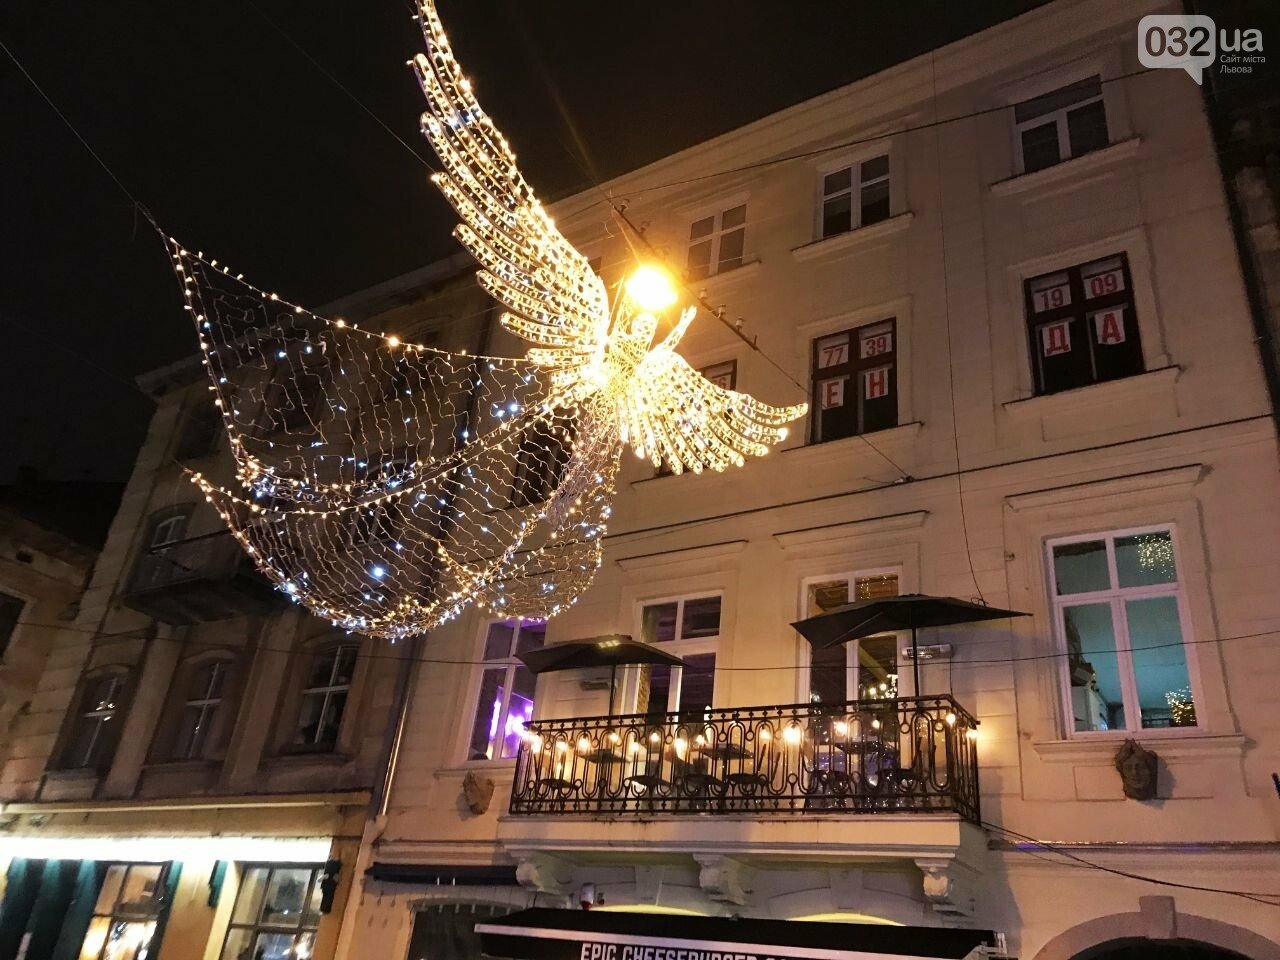 8-метровий ангел у центрі Львова, Фото: 032.ua